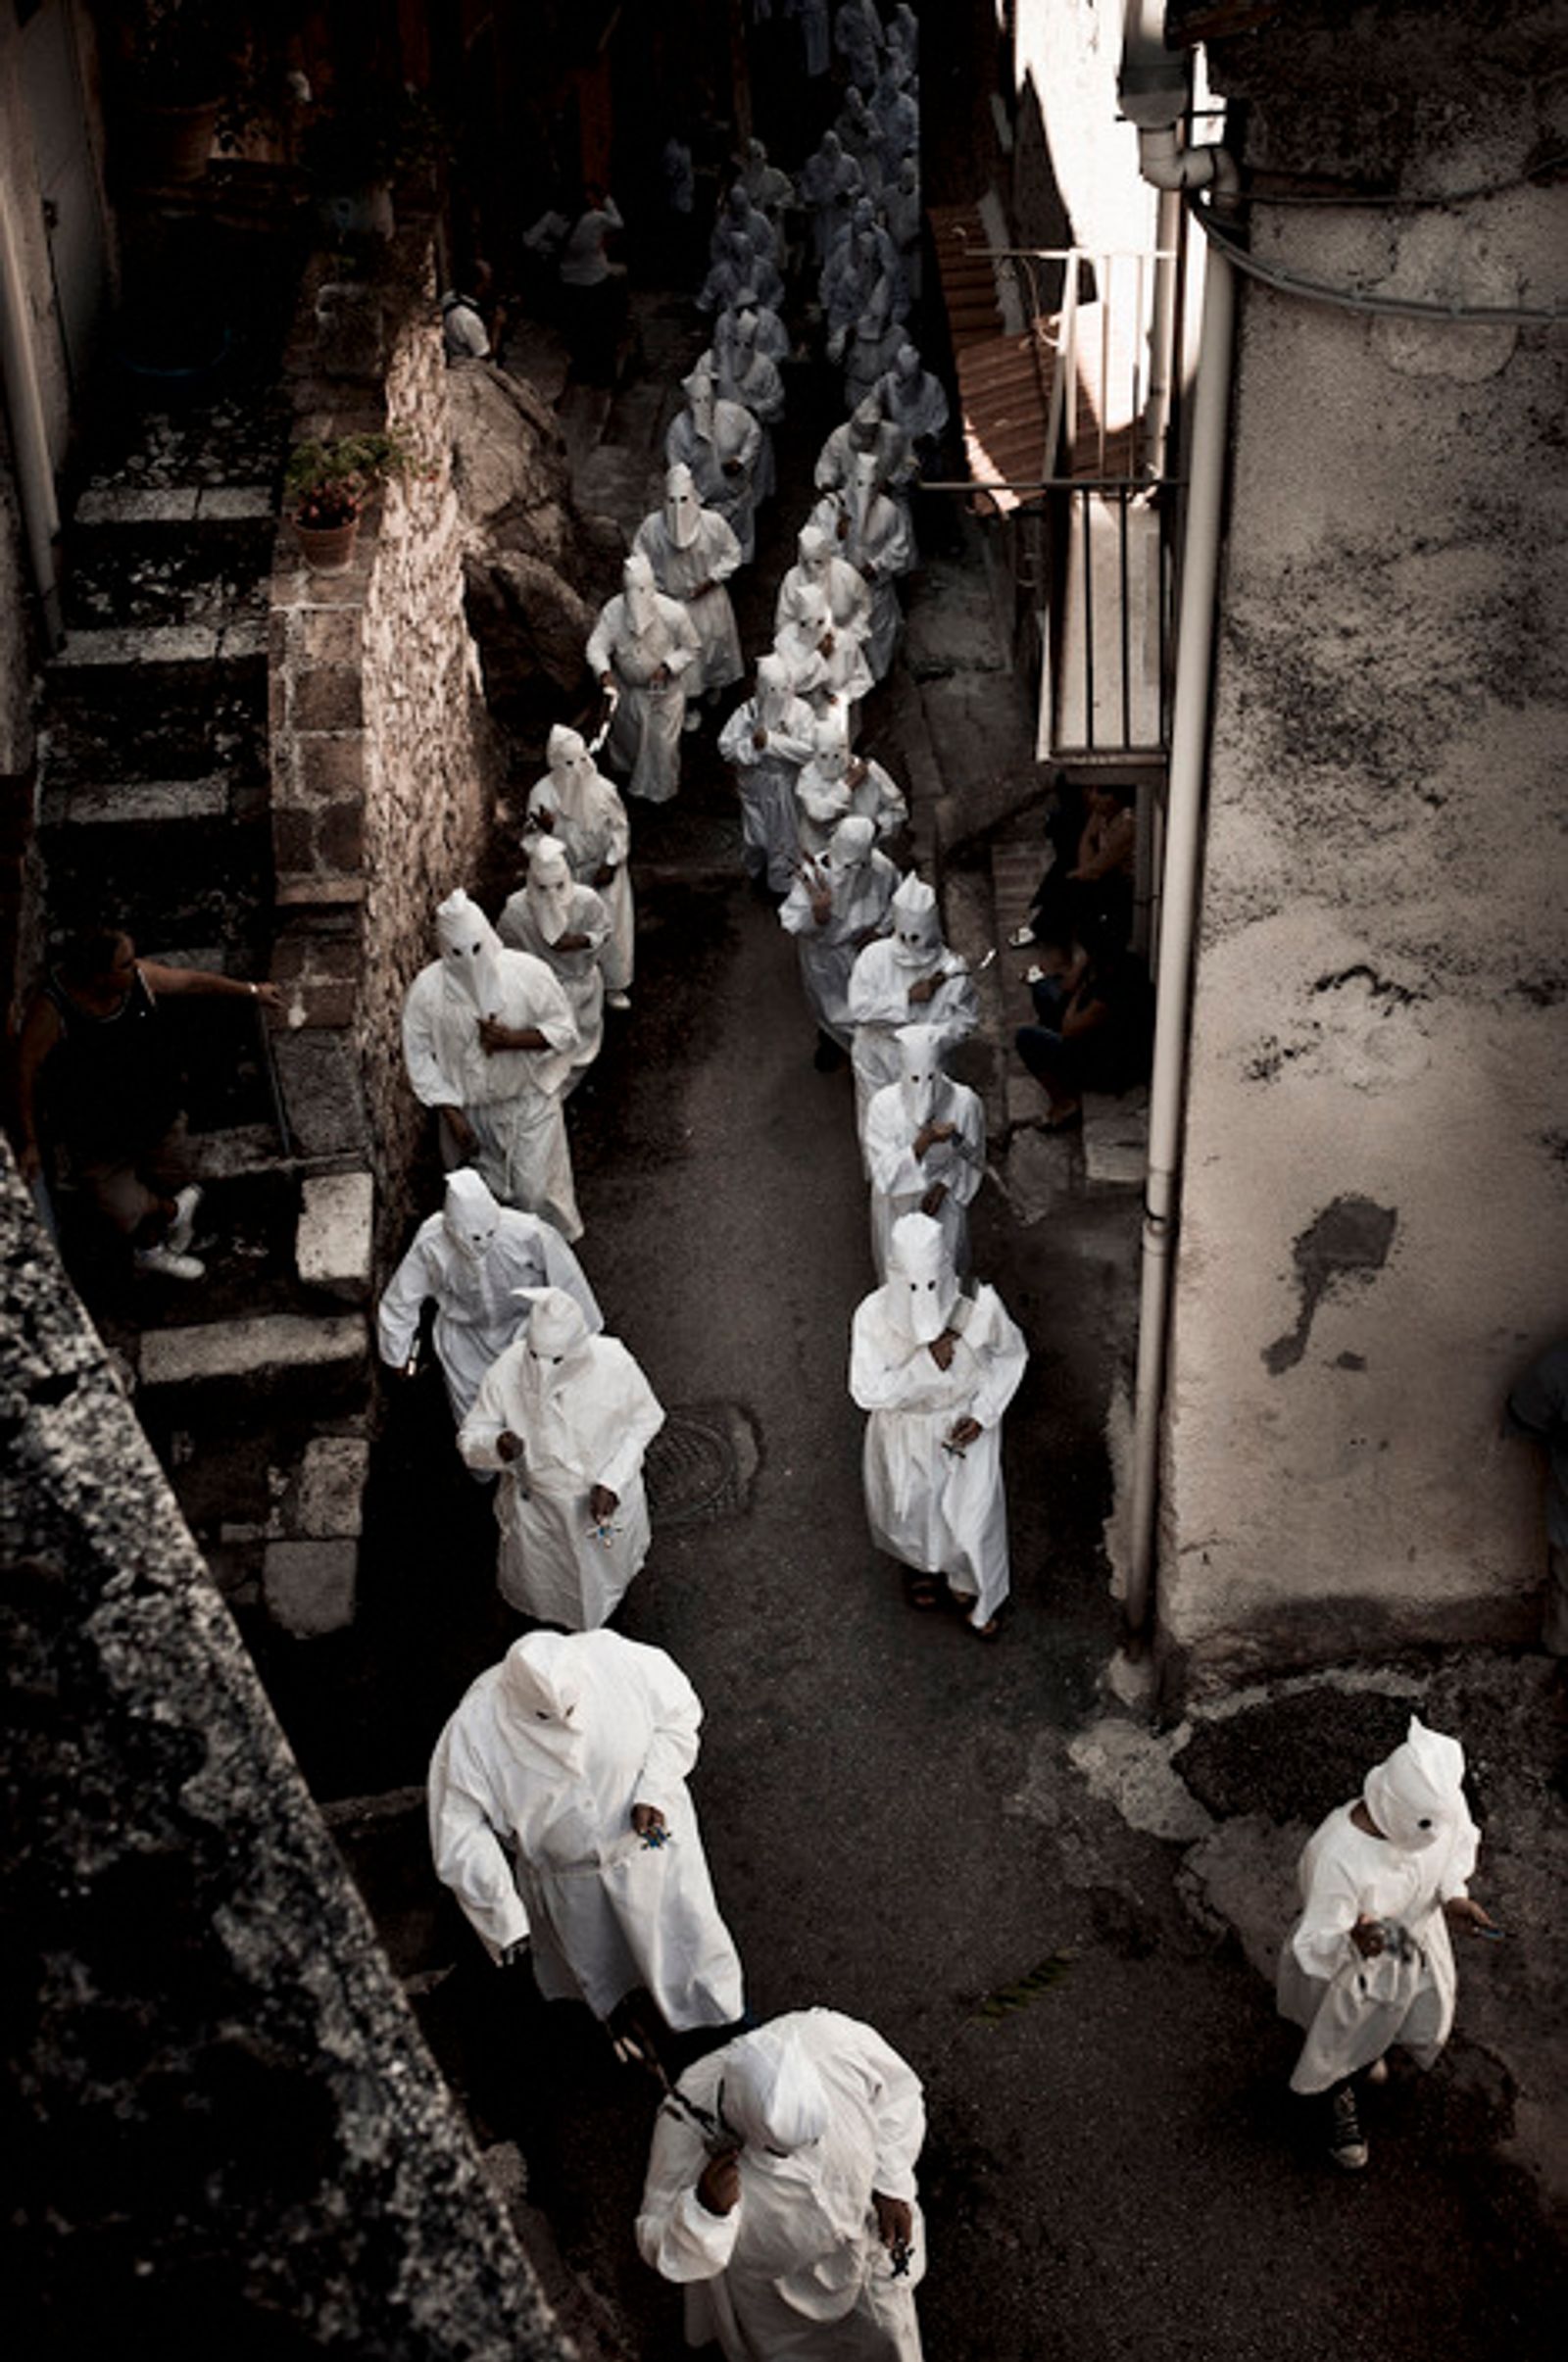 © Roberto Boccaccino - Penitential rite in Guardia Sanframondi, Italy. 2010.